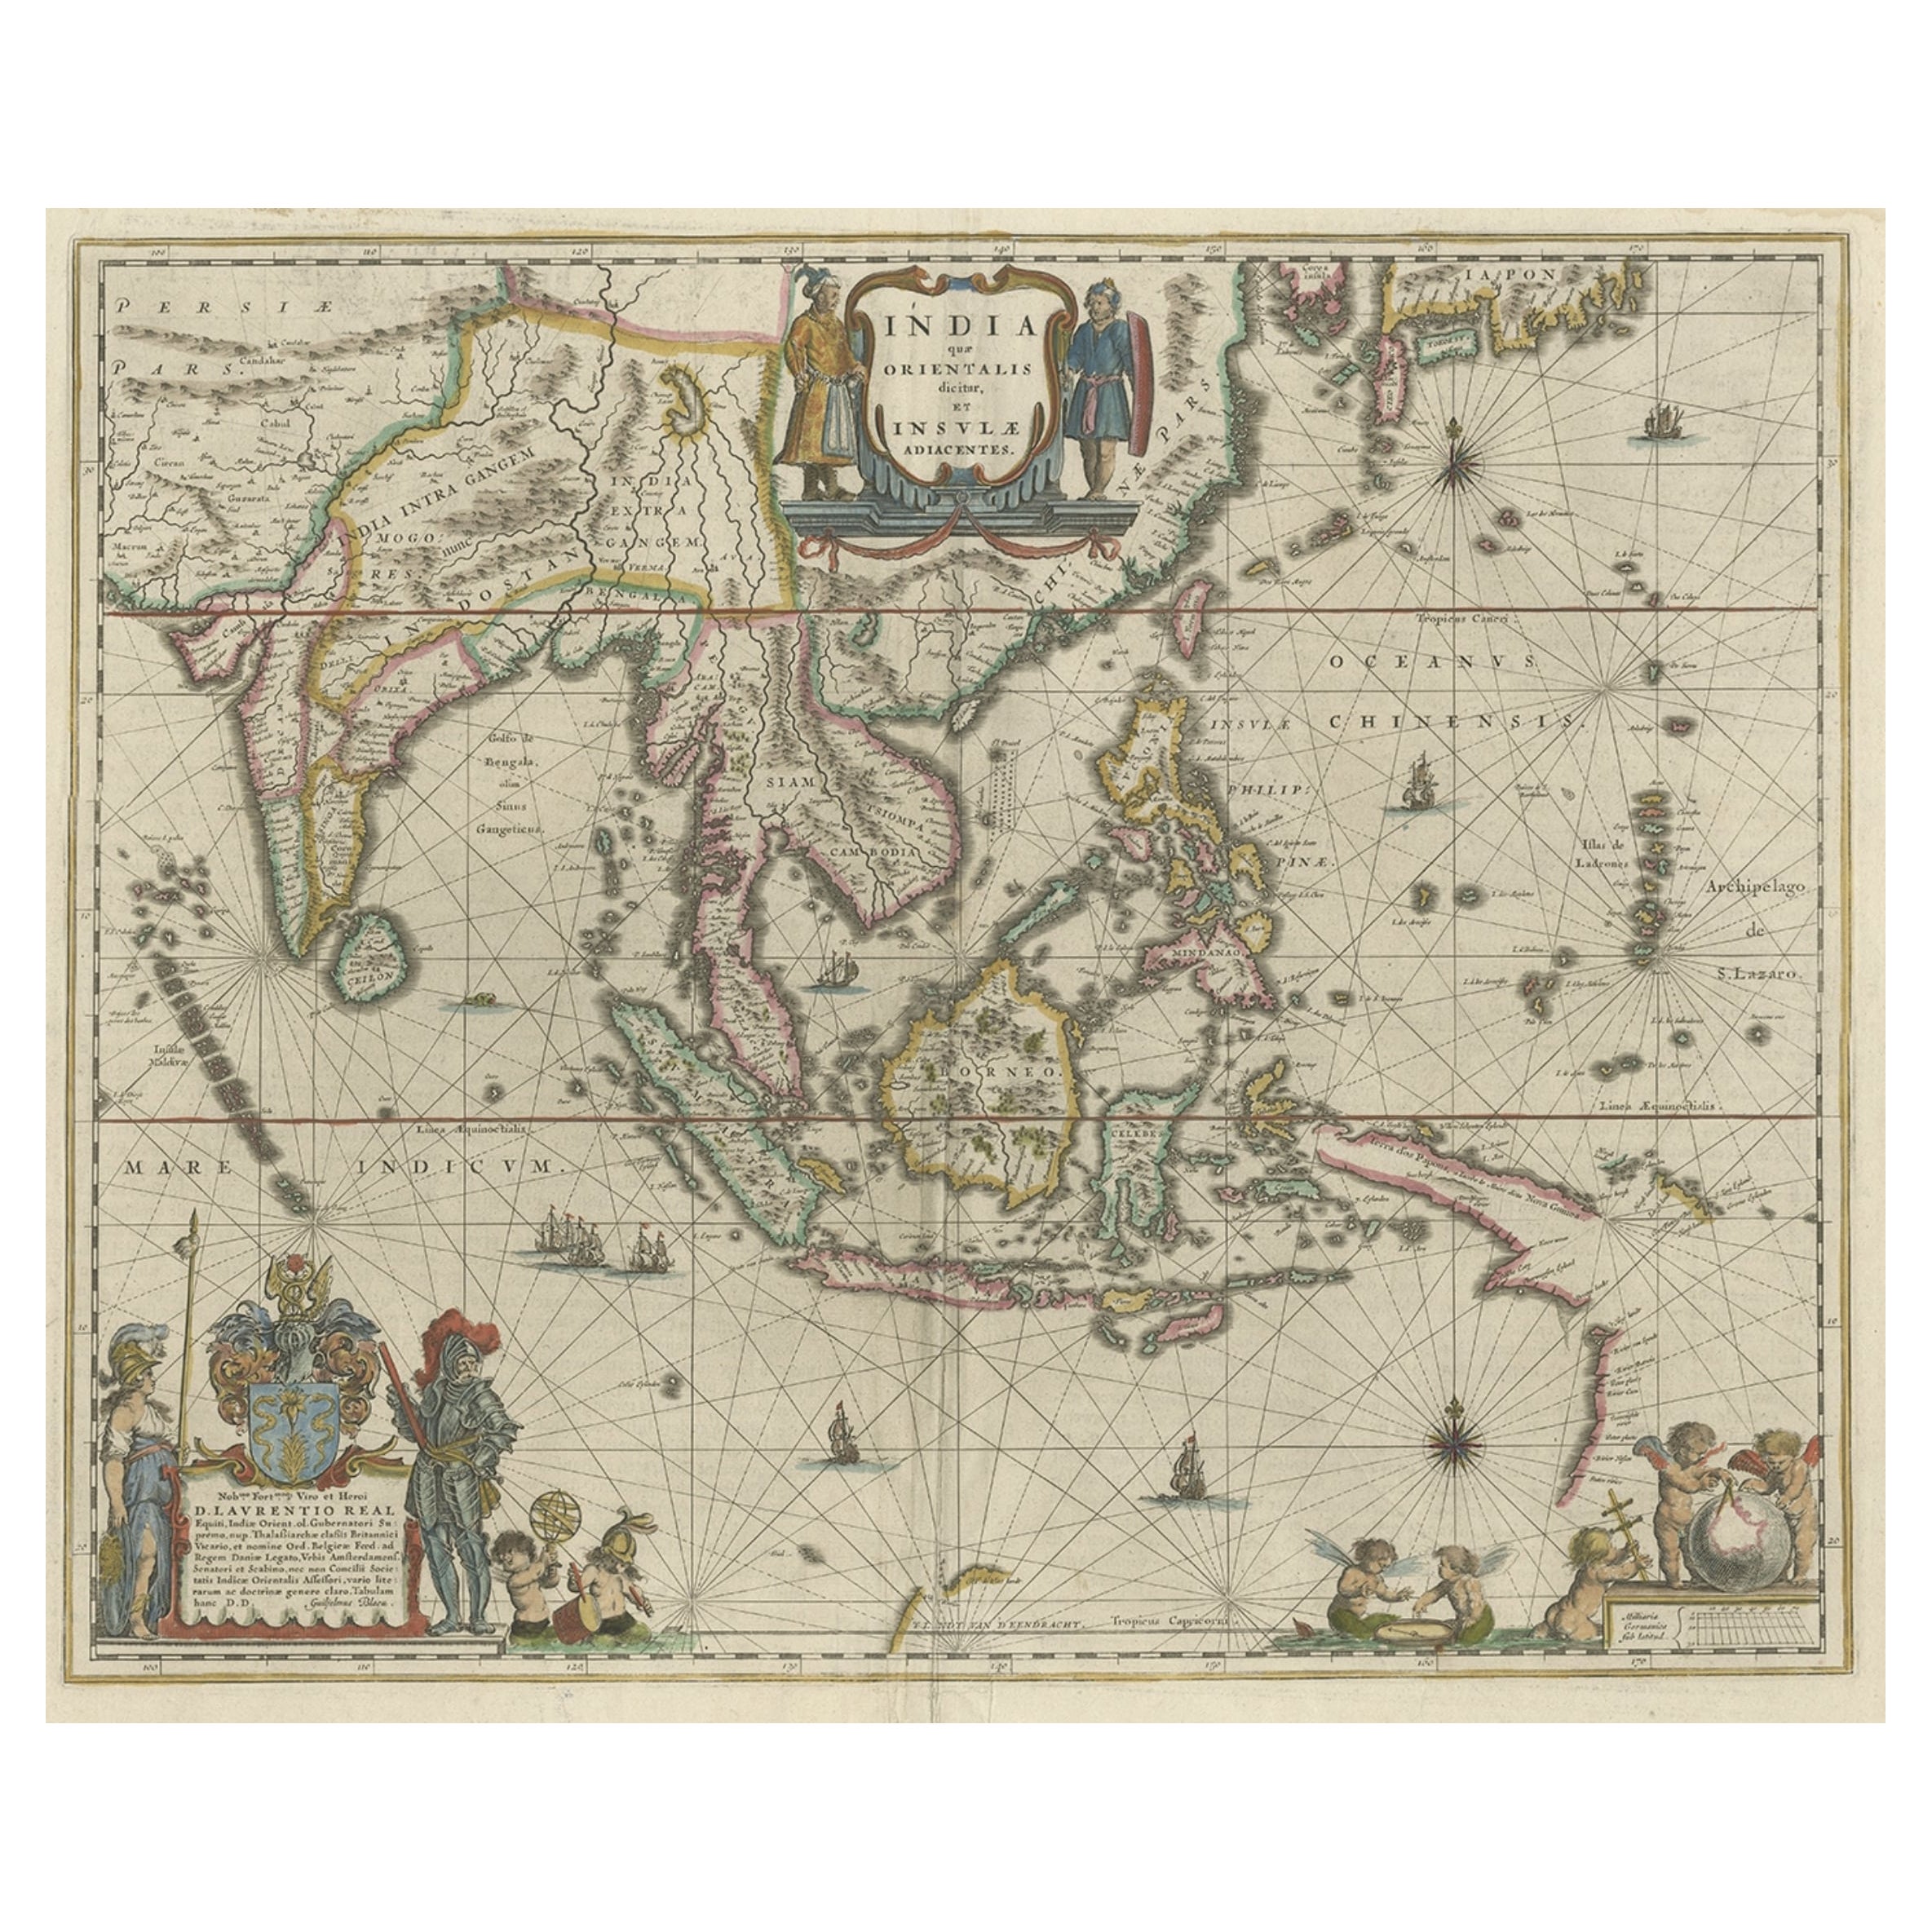 Carte originale de Blaeu du Southeast Asia, de l'Inde au Tibet et du Japon à la Nouvelle-Guinée